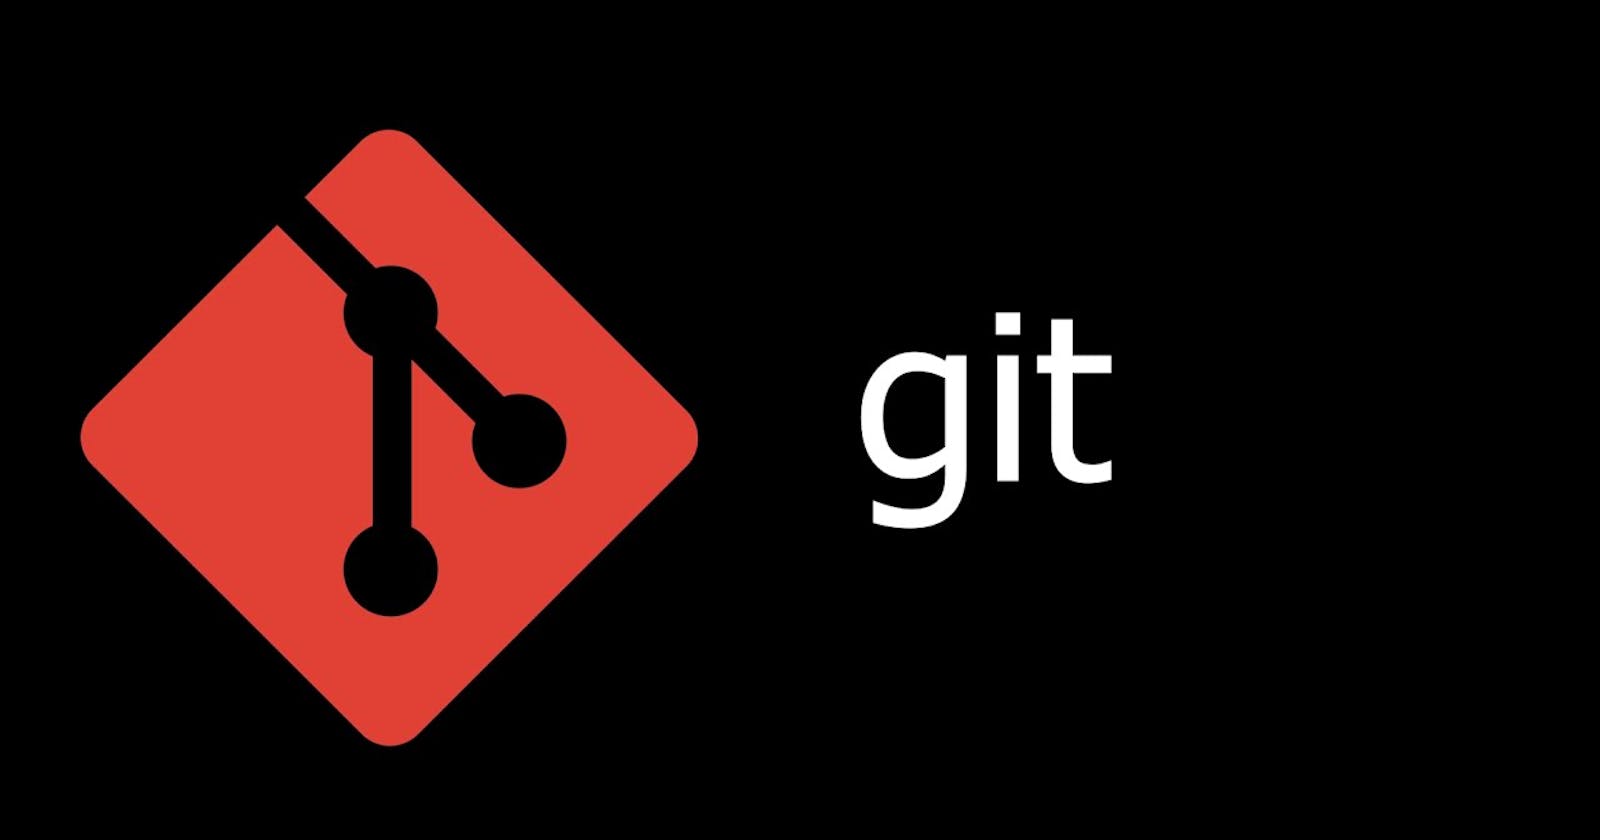 Git useful tool for Devops